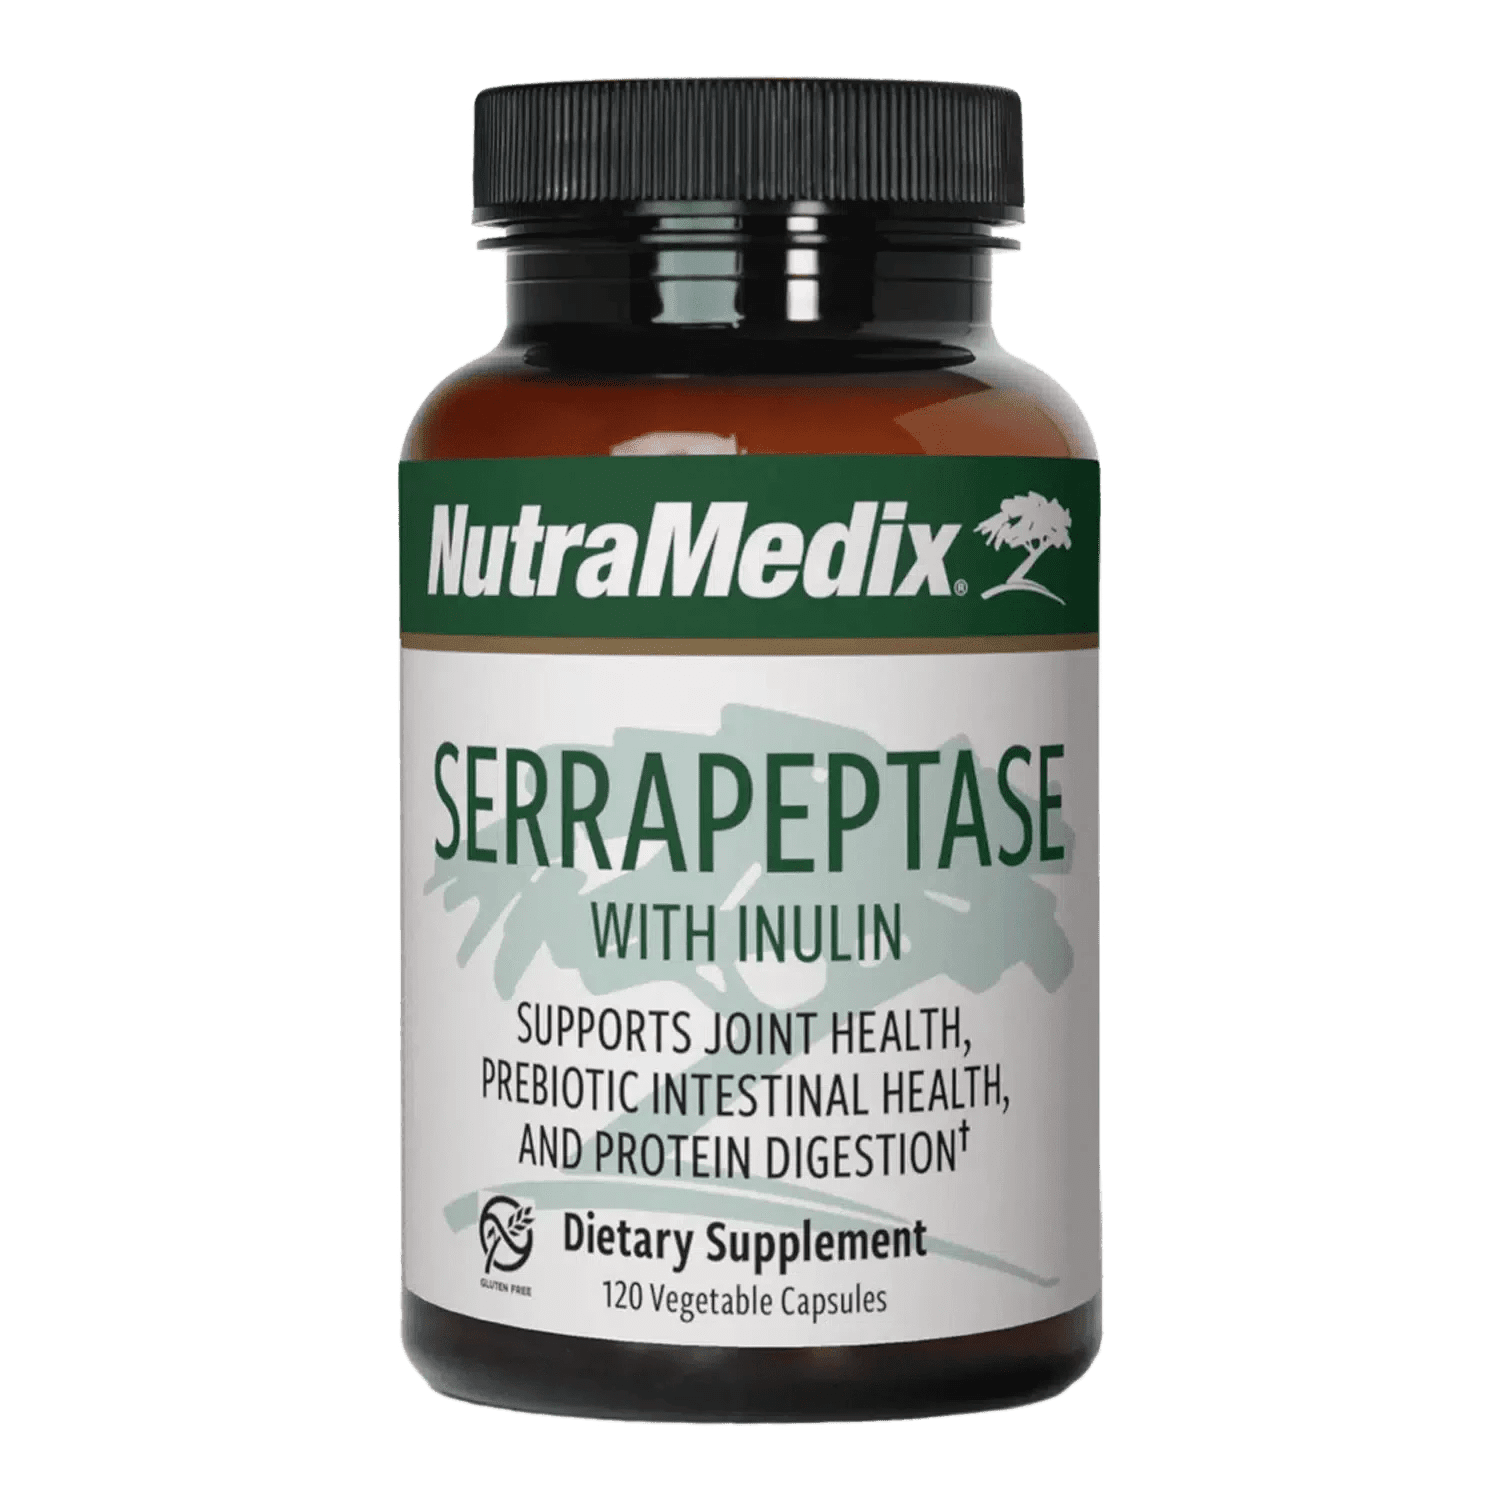 Serrapeptase joint health supplement - 120 Vegetable Capsules